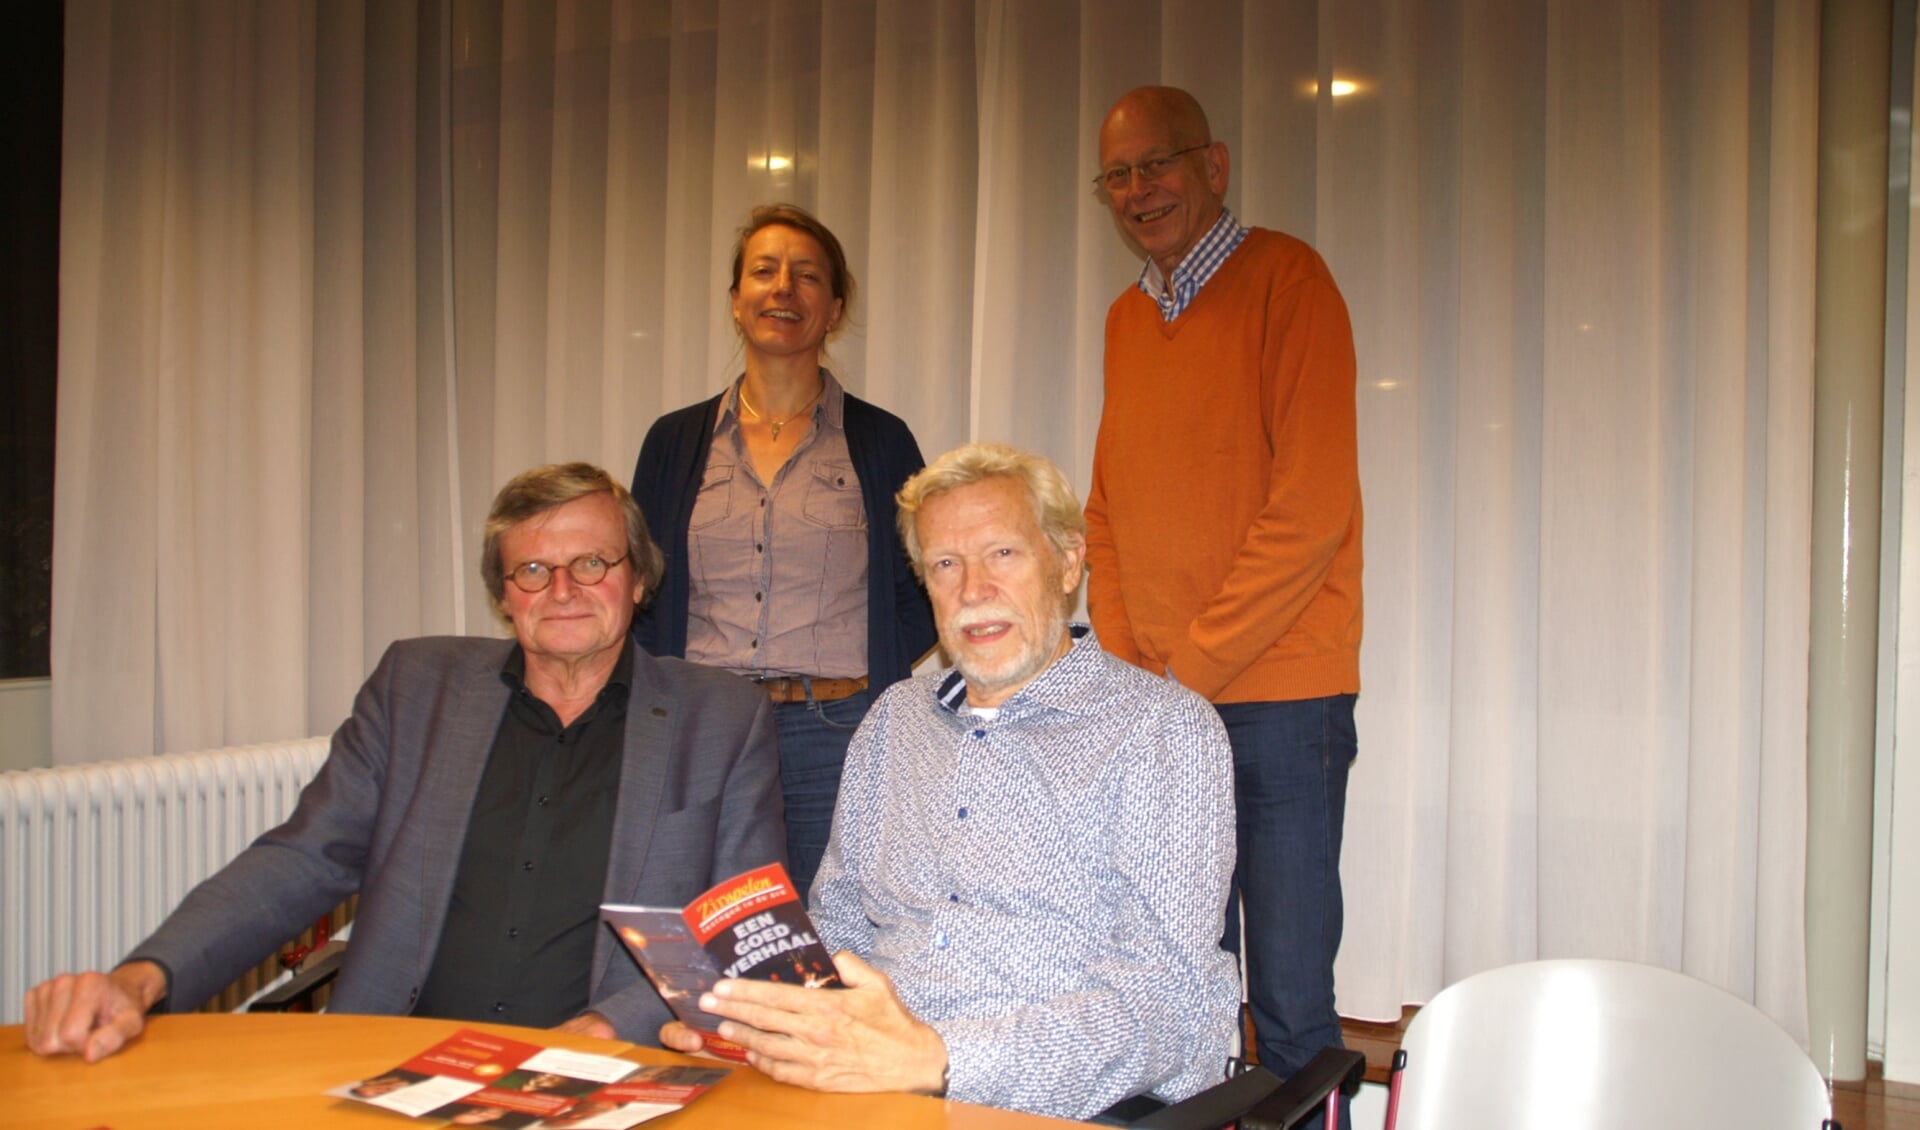 v.l.n.r.: Anne van Urk, Annet Knol, Ton Schreuders en Albert-Jan Wagensveld